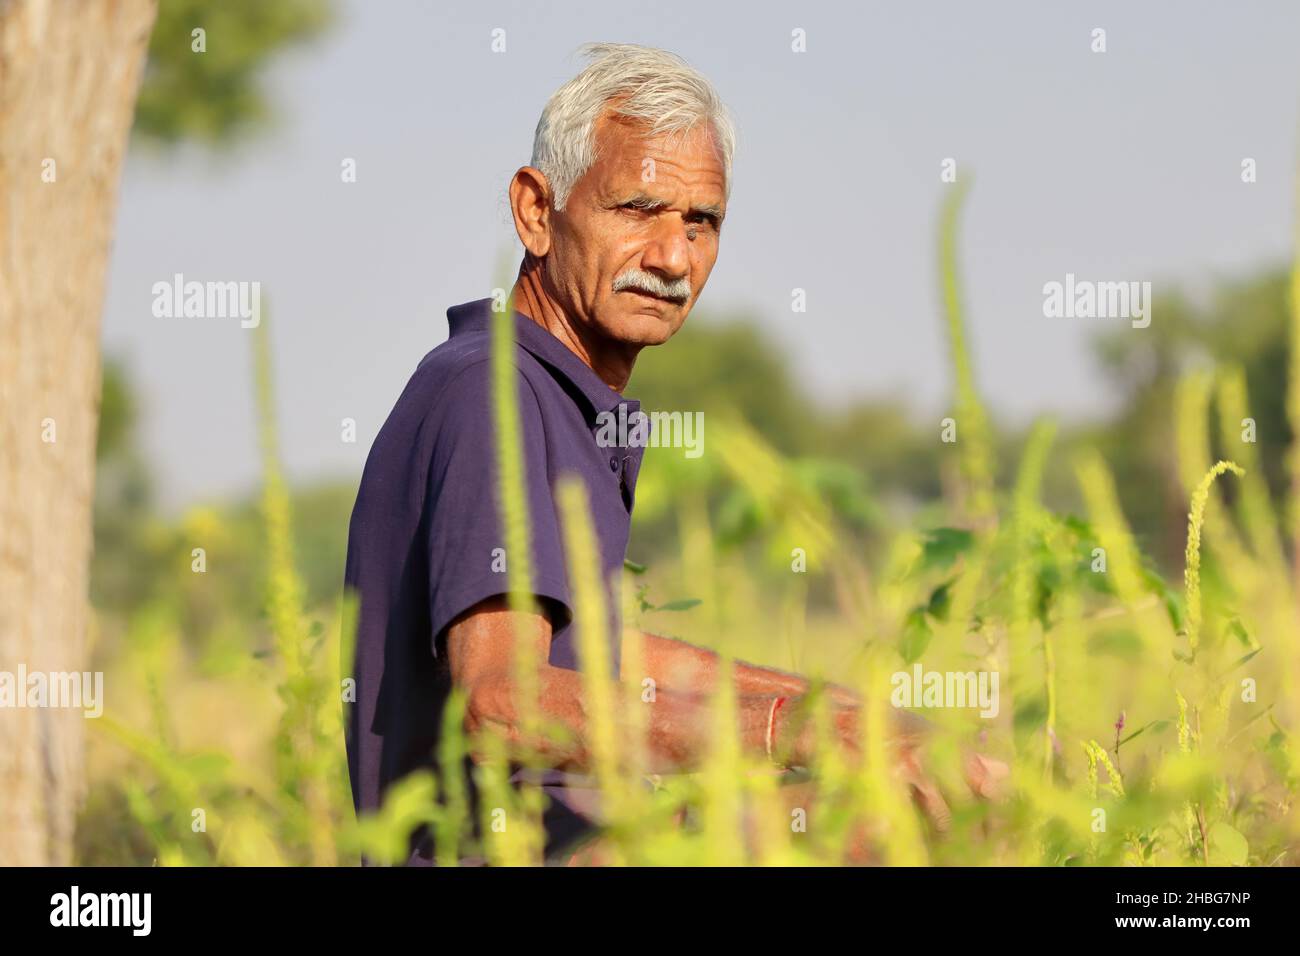 Portraitfoto eines progressiven indischen Senior Farmers, der in der Nähe von wildgrünen Gräsern sitzt und die Kamera anschaut Stockfoto